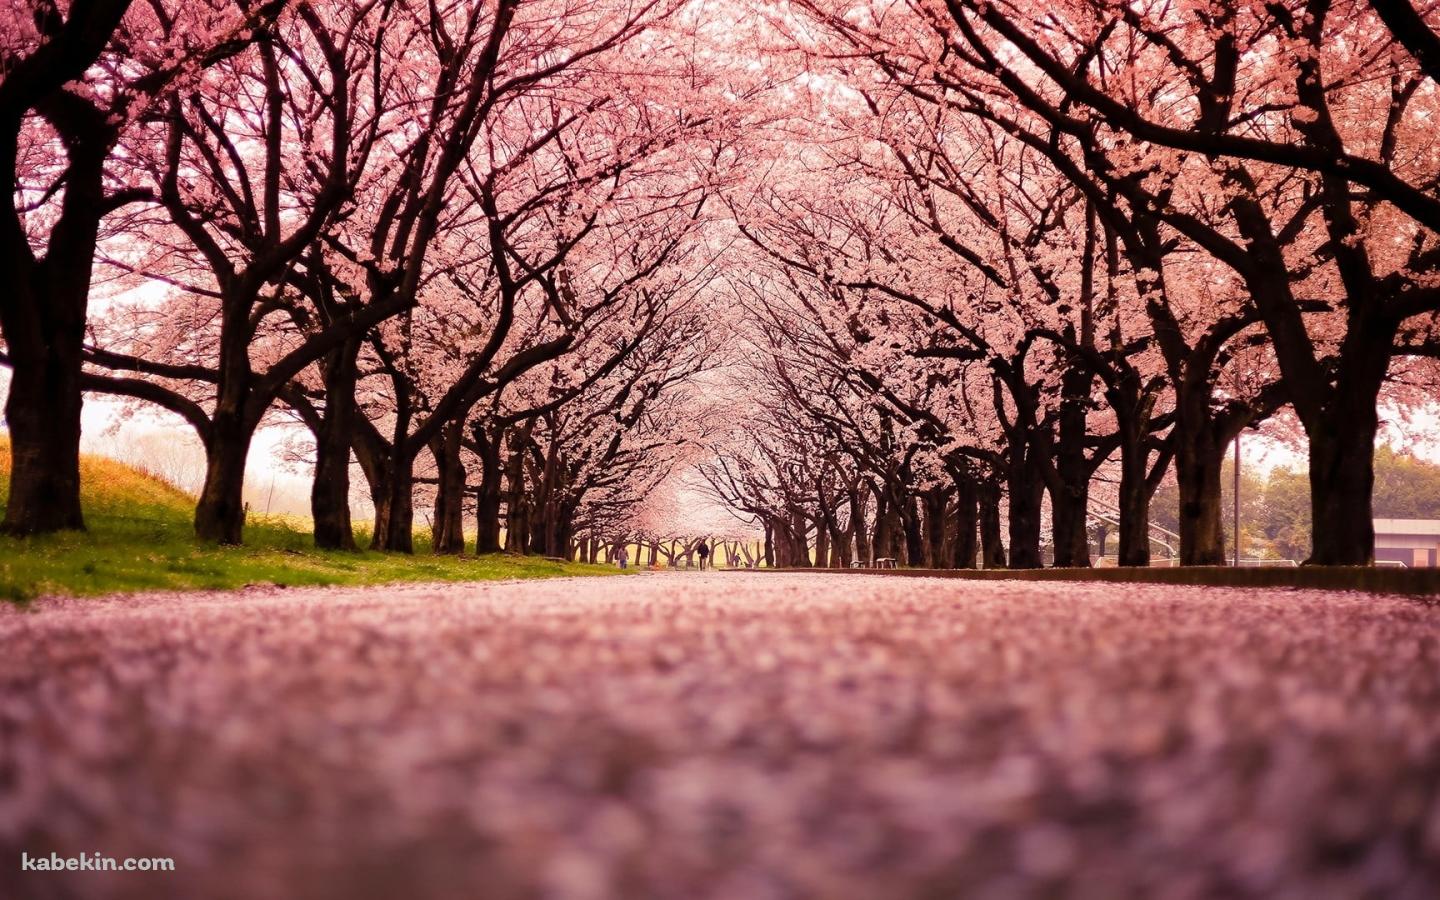 綺麗な桜の並木道 絨毯の壁紙(1440px x 900px) 高画質 PC・デスクトップ用